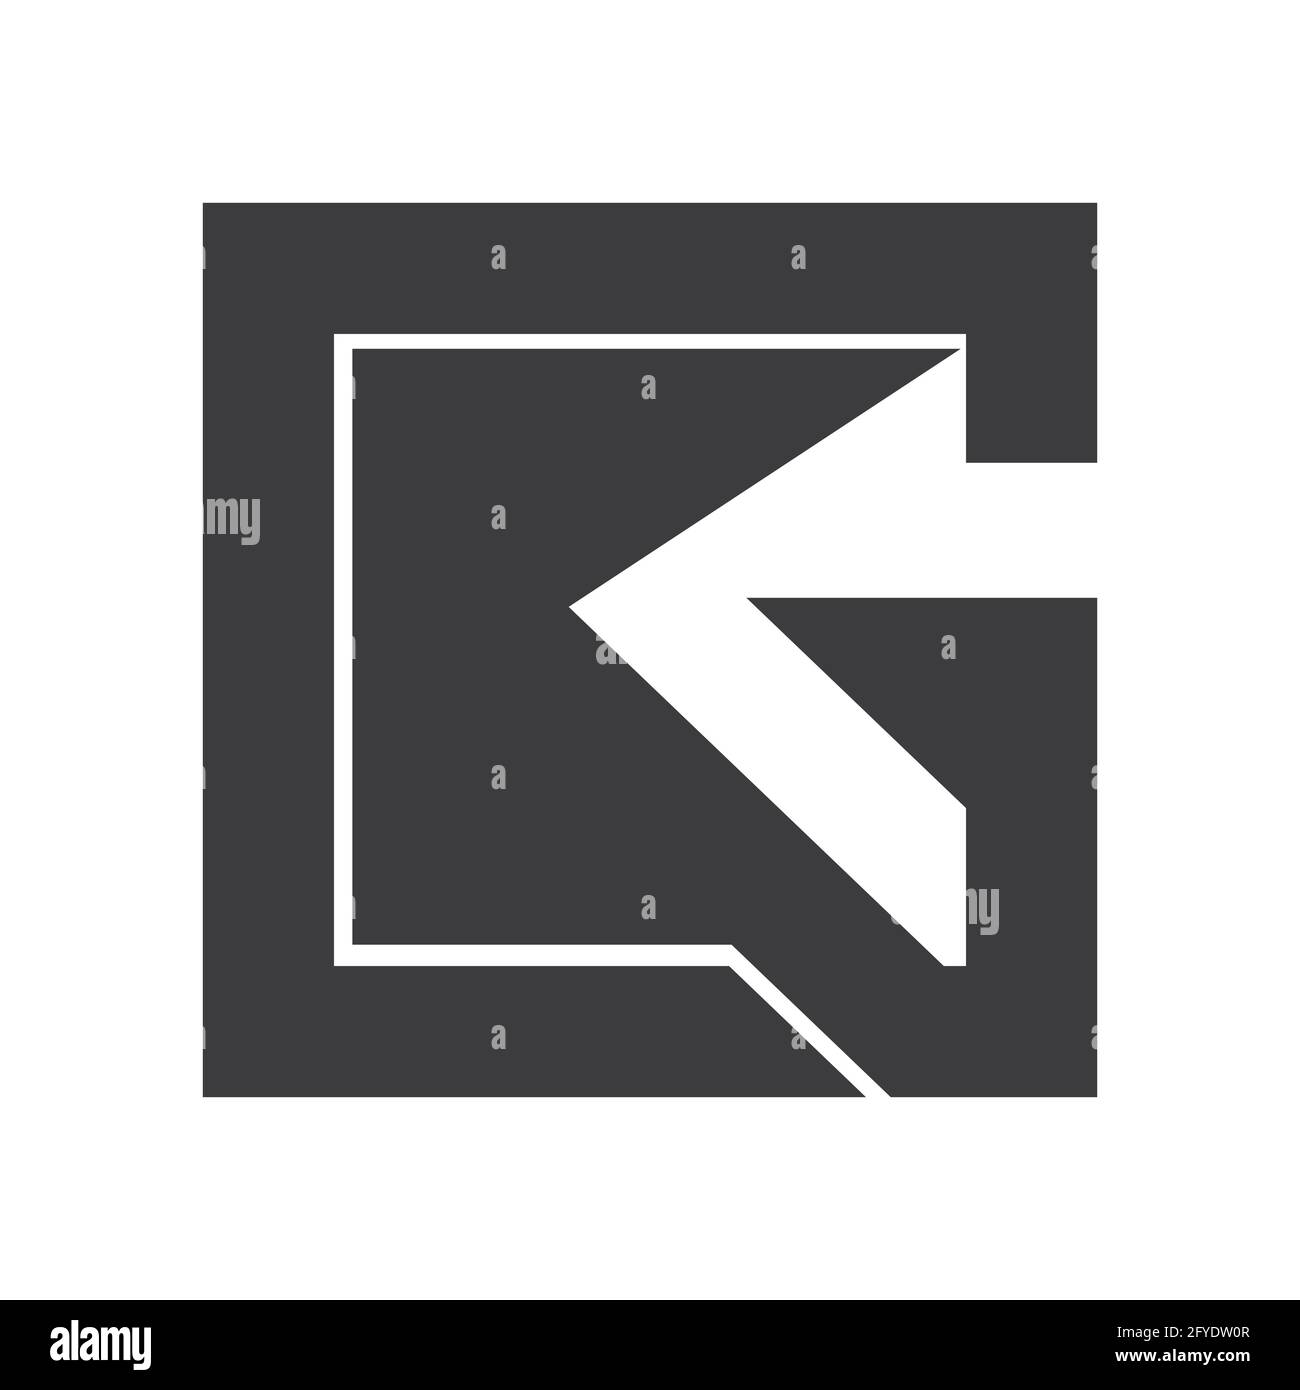 Alphabet letters Initials Monogram logo KG, GK, K and G Stock Vector